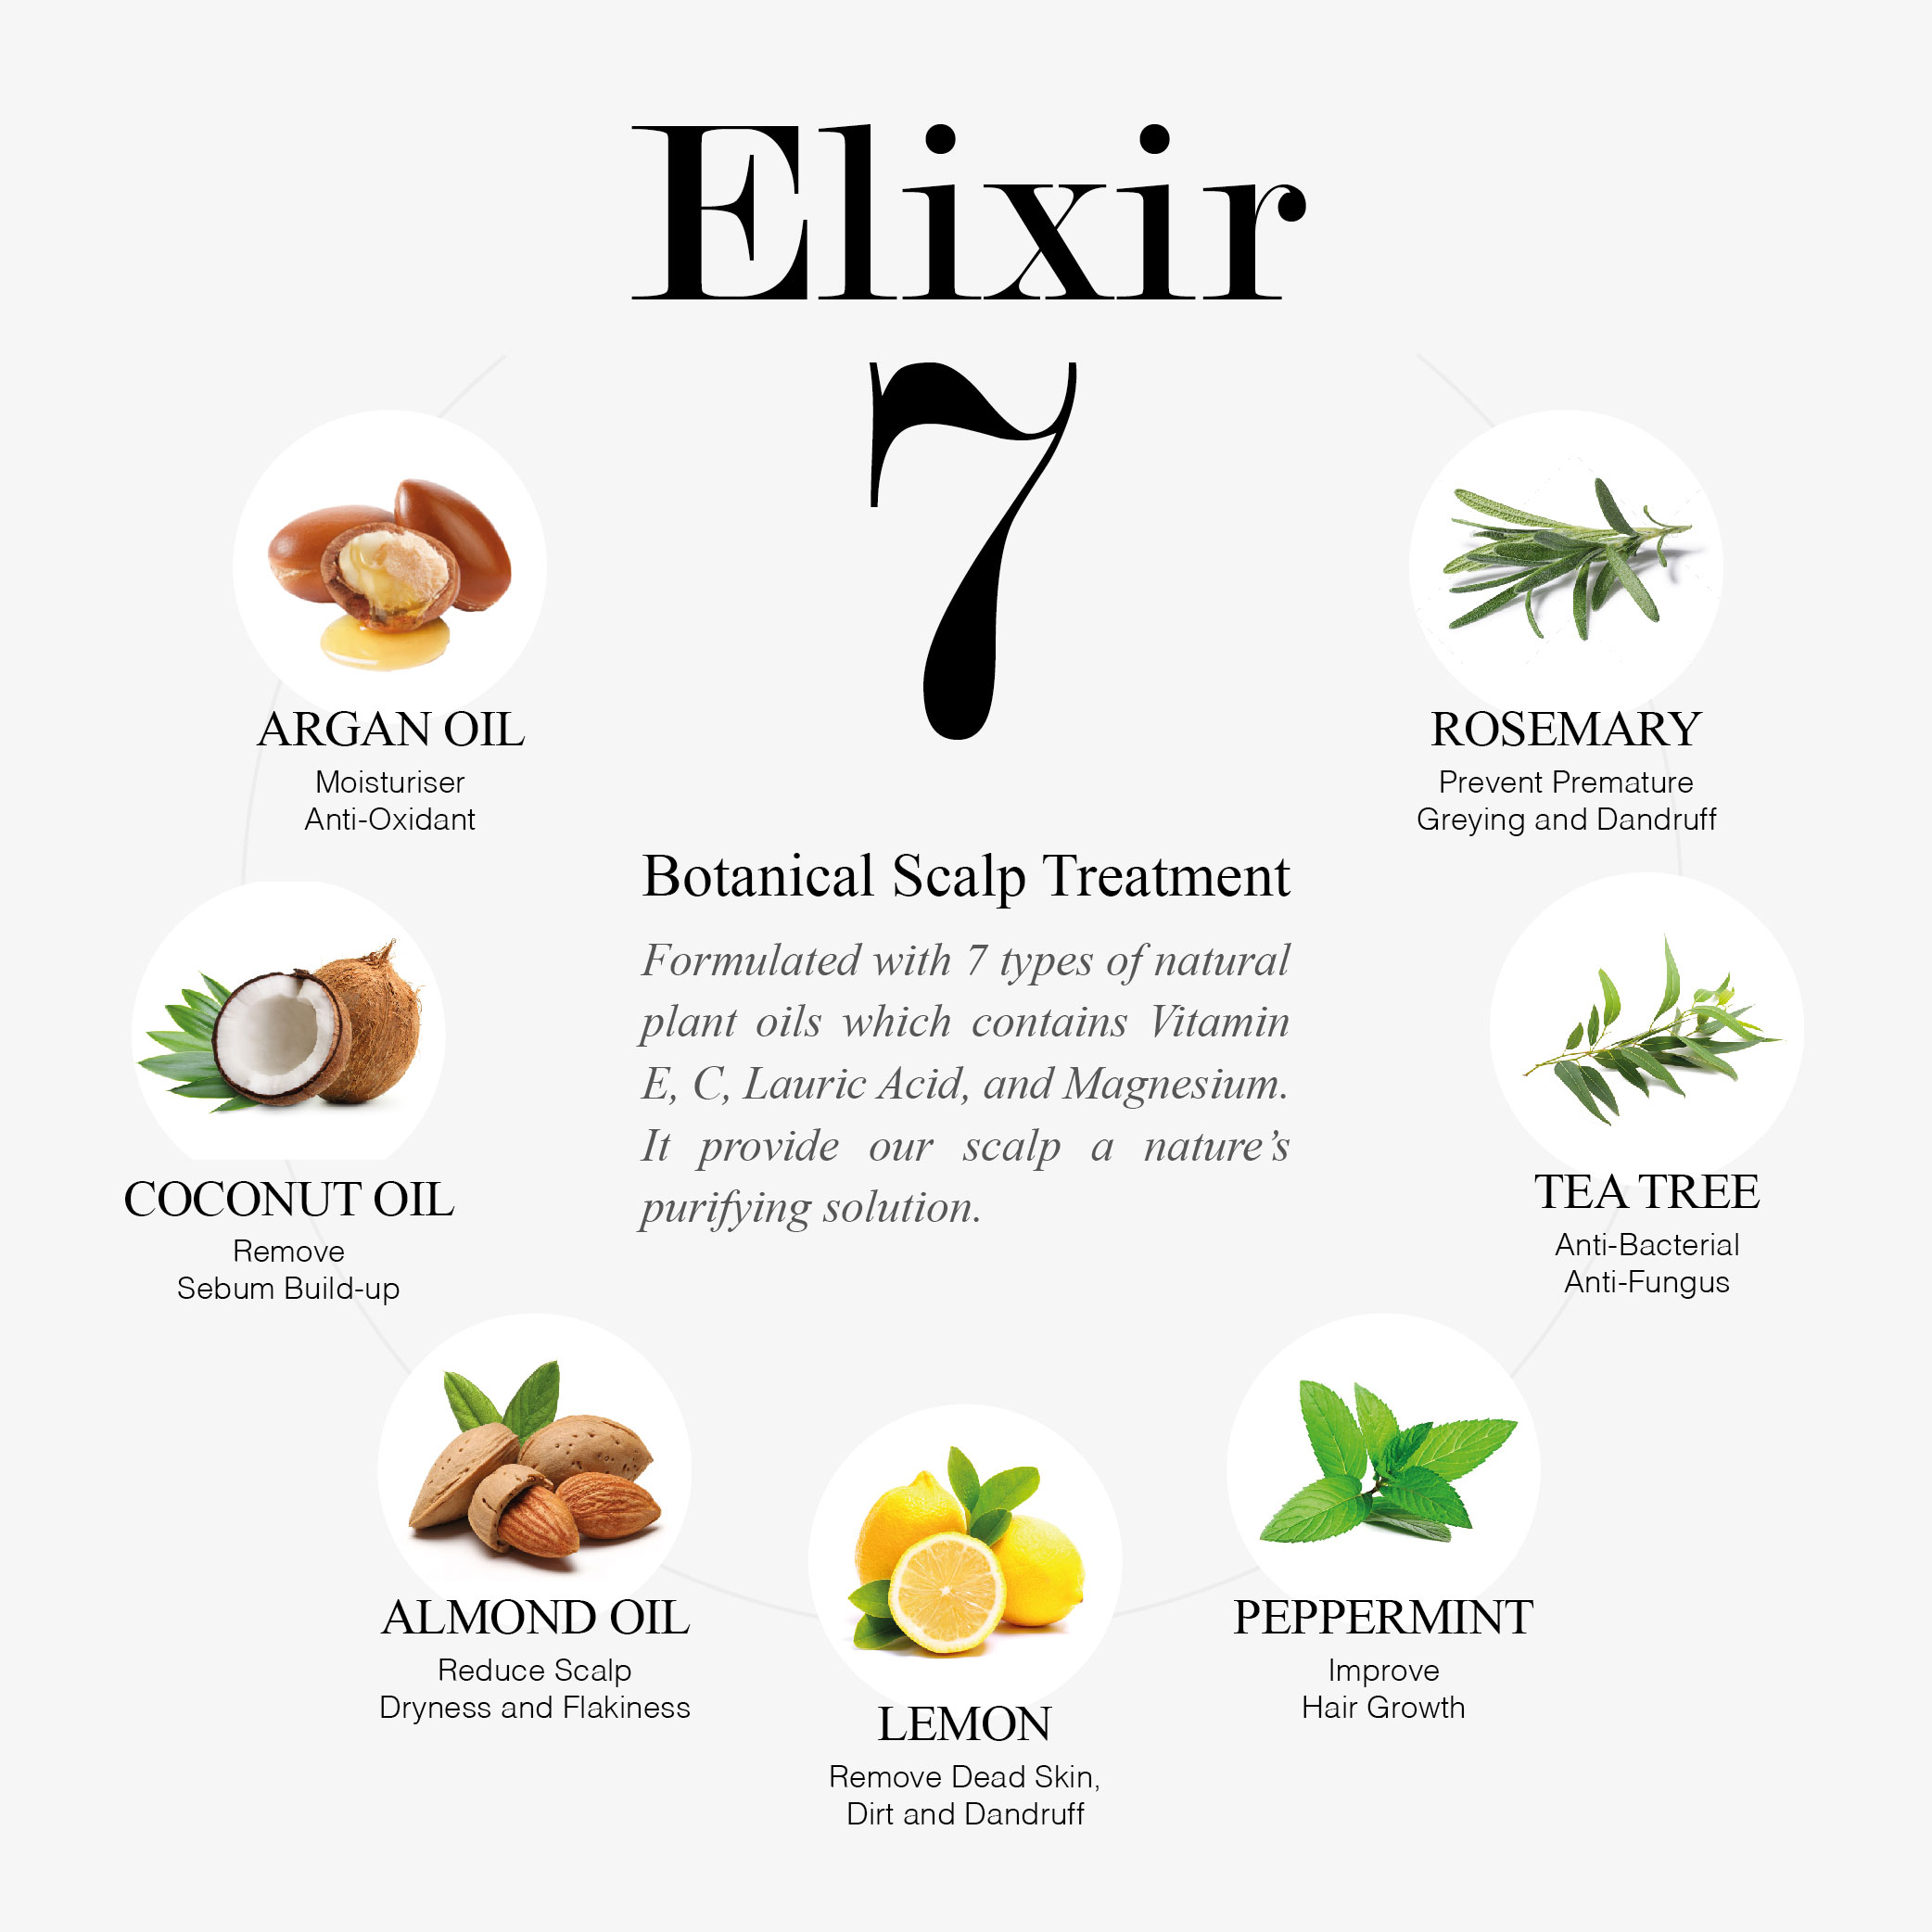 Greenology Elixir 7 Botanical Scalp Treatment